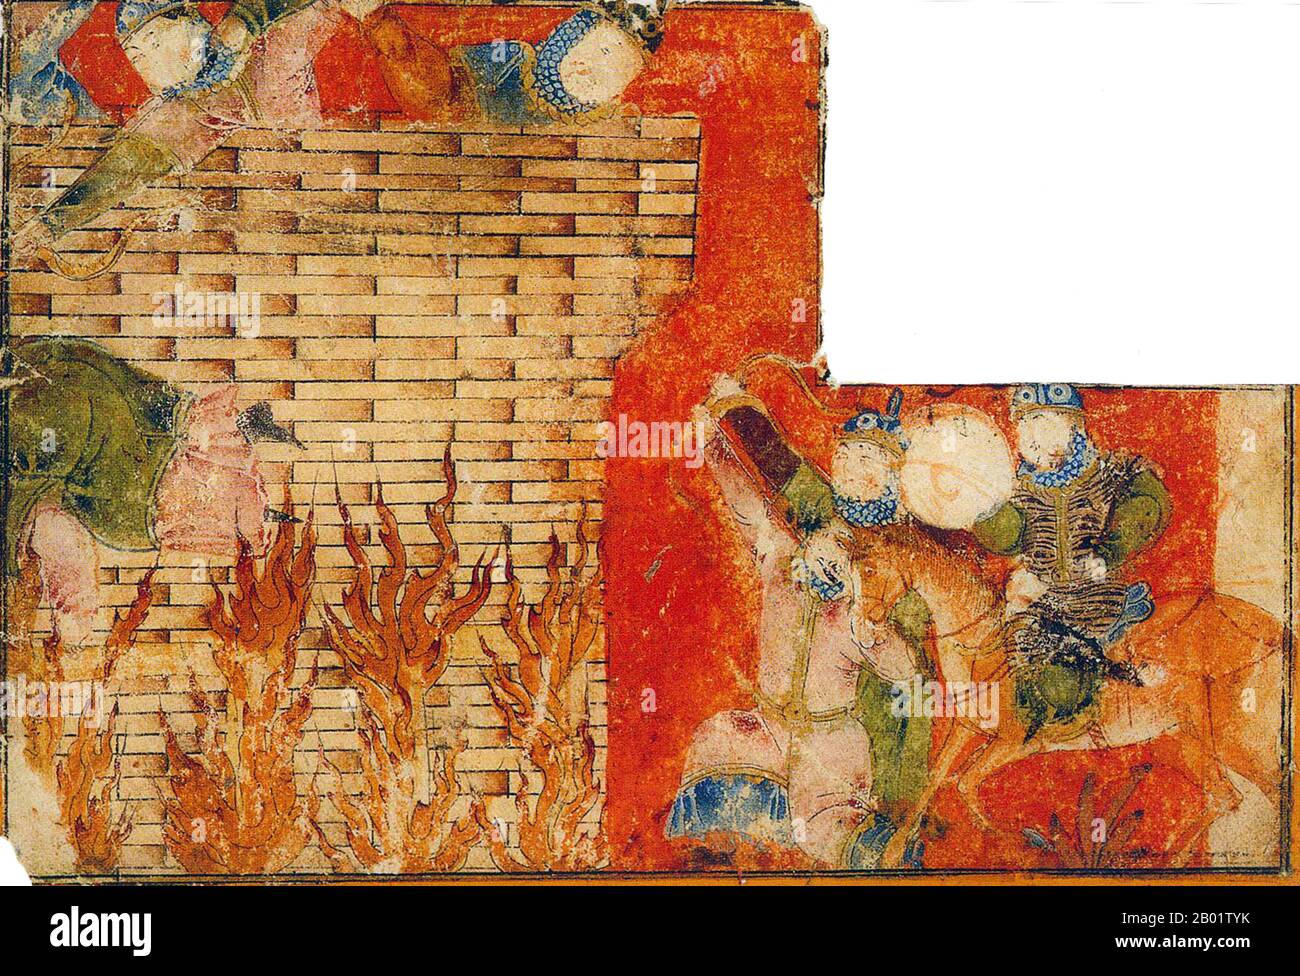 Iran/Persien: Ein Angriff auf eine Burg, der wahrscheinlich die Belagerung der turanischen Festung Bidad darstellt. Der Mann mit dem Tigerfell ist Rustam. Illustration aus einem Shahnameh aus dem frühen 14. Jahrhundert, Isfahan. Das Schahnameh oder Schah-nama („das Buch der Könige“) ist ein langes episches Gedicht des persischen Dichters Ferdowsi zwischen 977 und 1010 n. Chr. und ist das nationale Epos des Iran und verwandter persoiranischer Kulturen. Mit rund 60.000 Versen erzählt das Shahnameh die mythische und teilweise auch historische Vergangenheit des Großirans von der Entstehung der Welt bis zur islamischen Eroberung Persiens im 7. Jahrhundert. Stockfoto